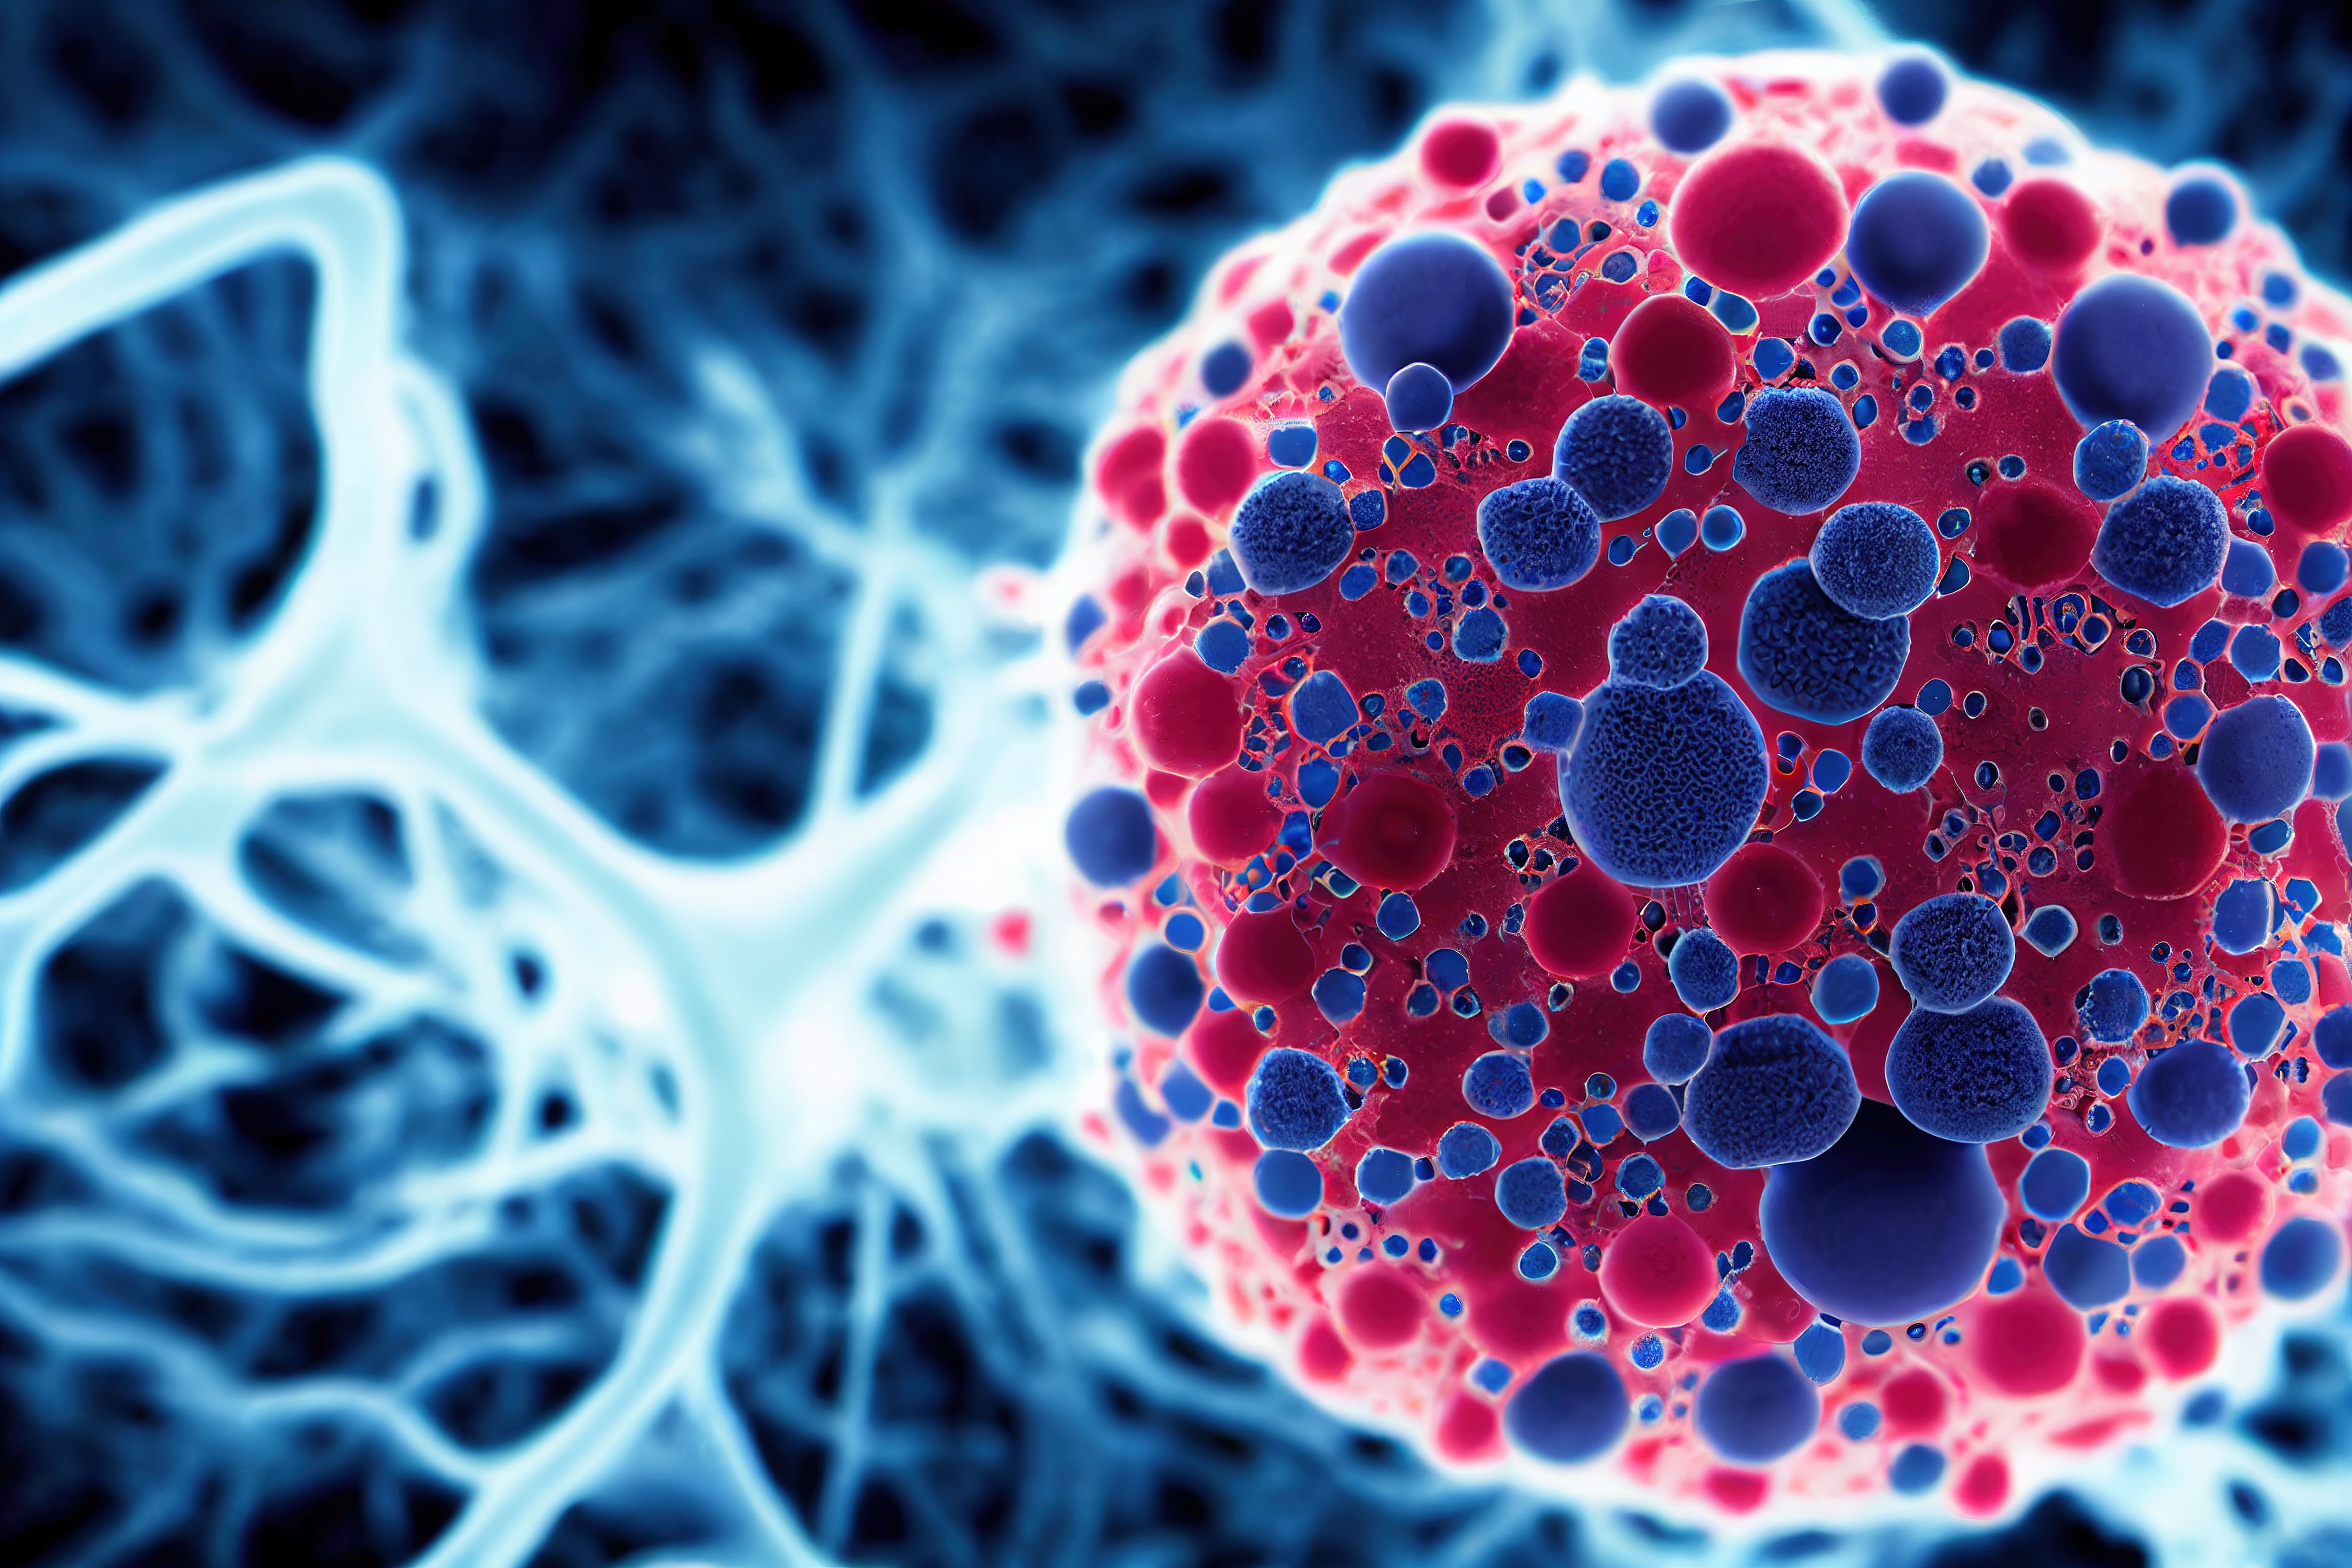 Los nuevos organiodes 3D se crean a partir de las células cancerosas de un paciente (Freepik)